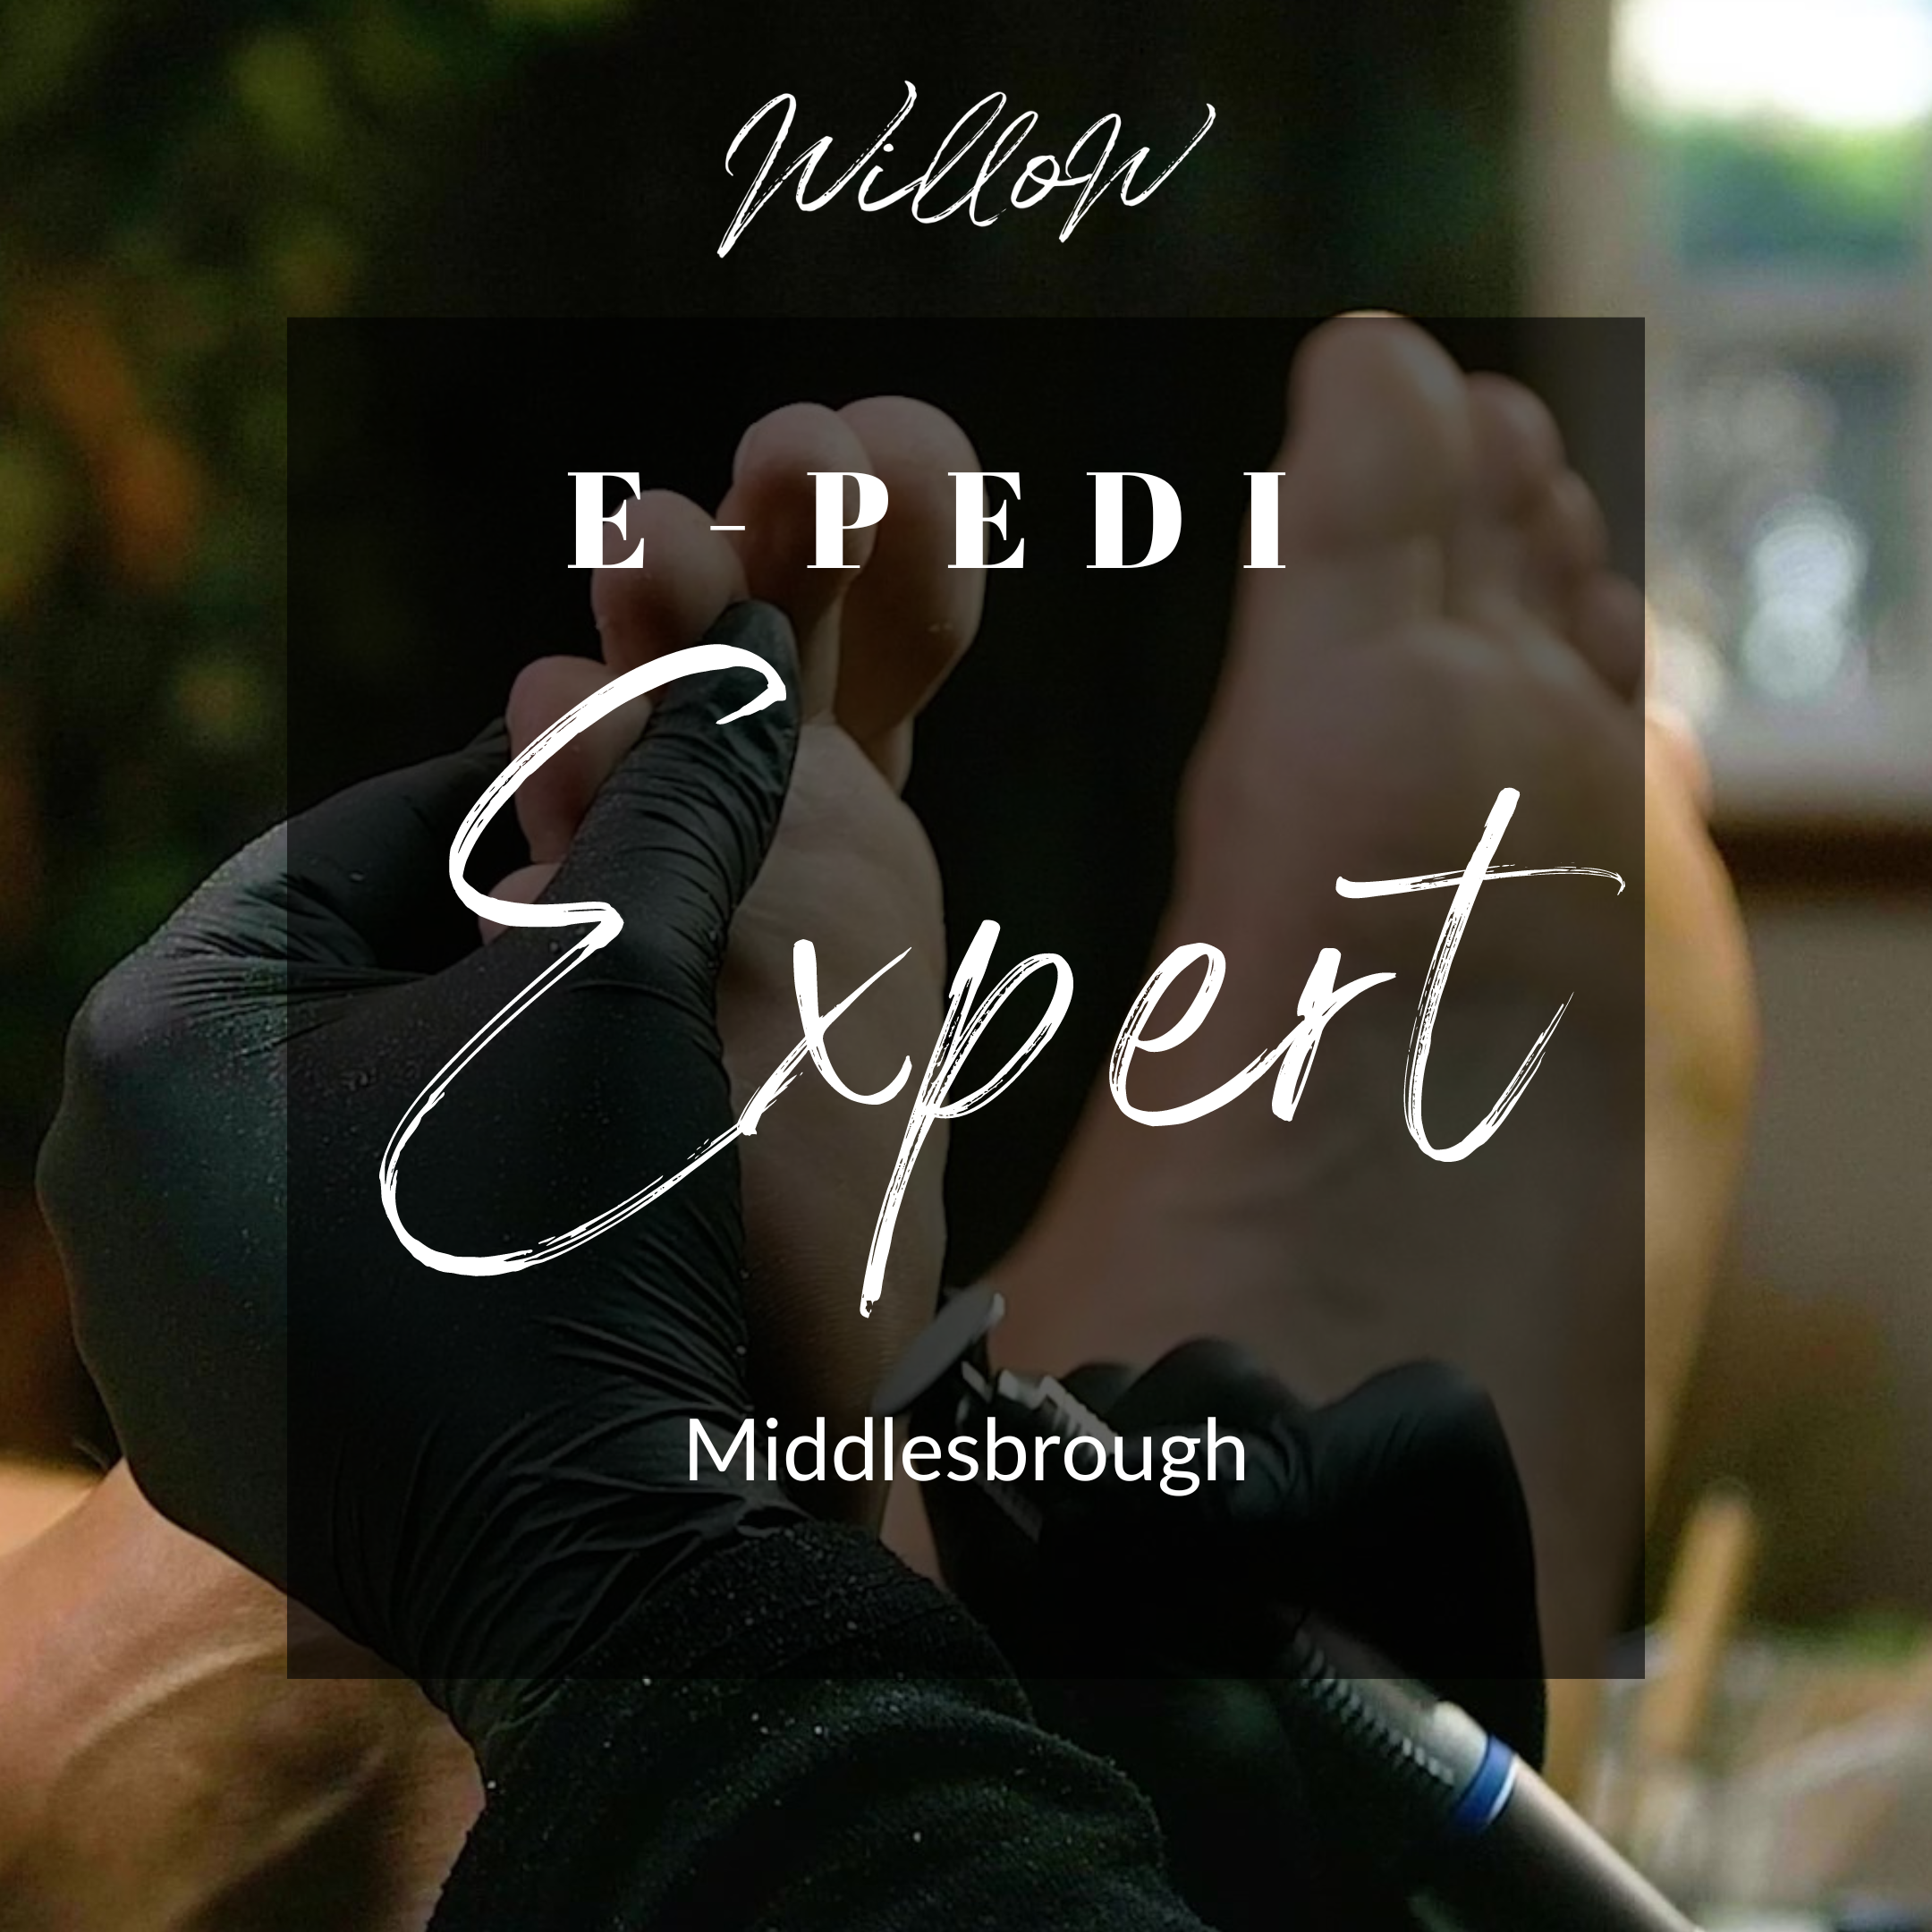 E-Pedi Expert Course - Middlesbrough